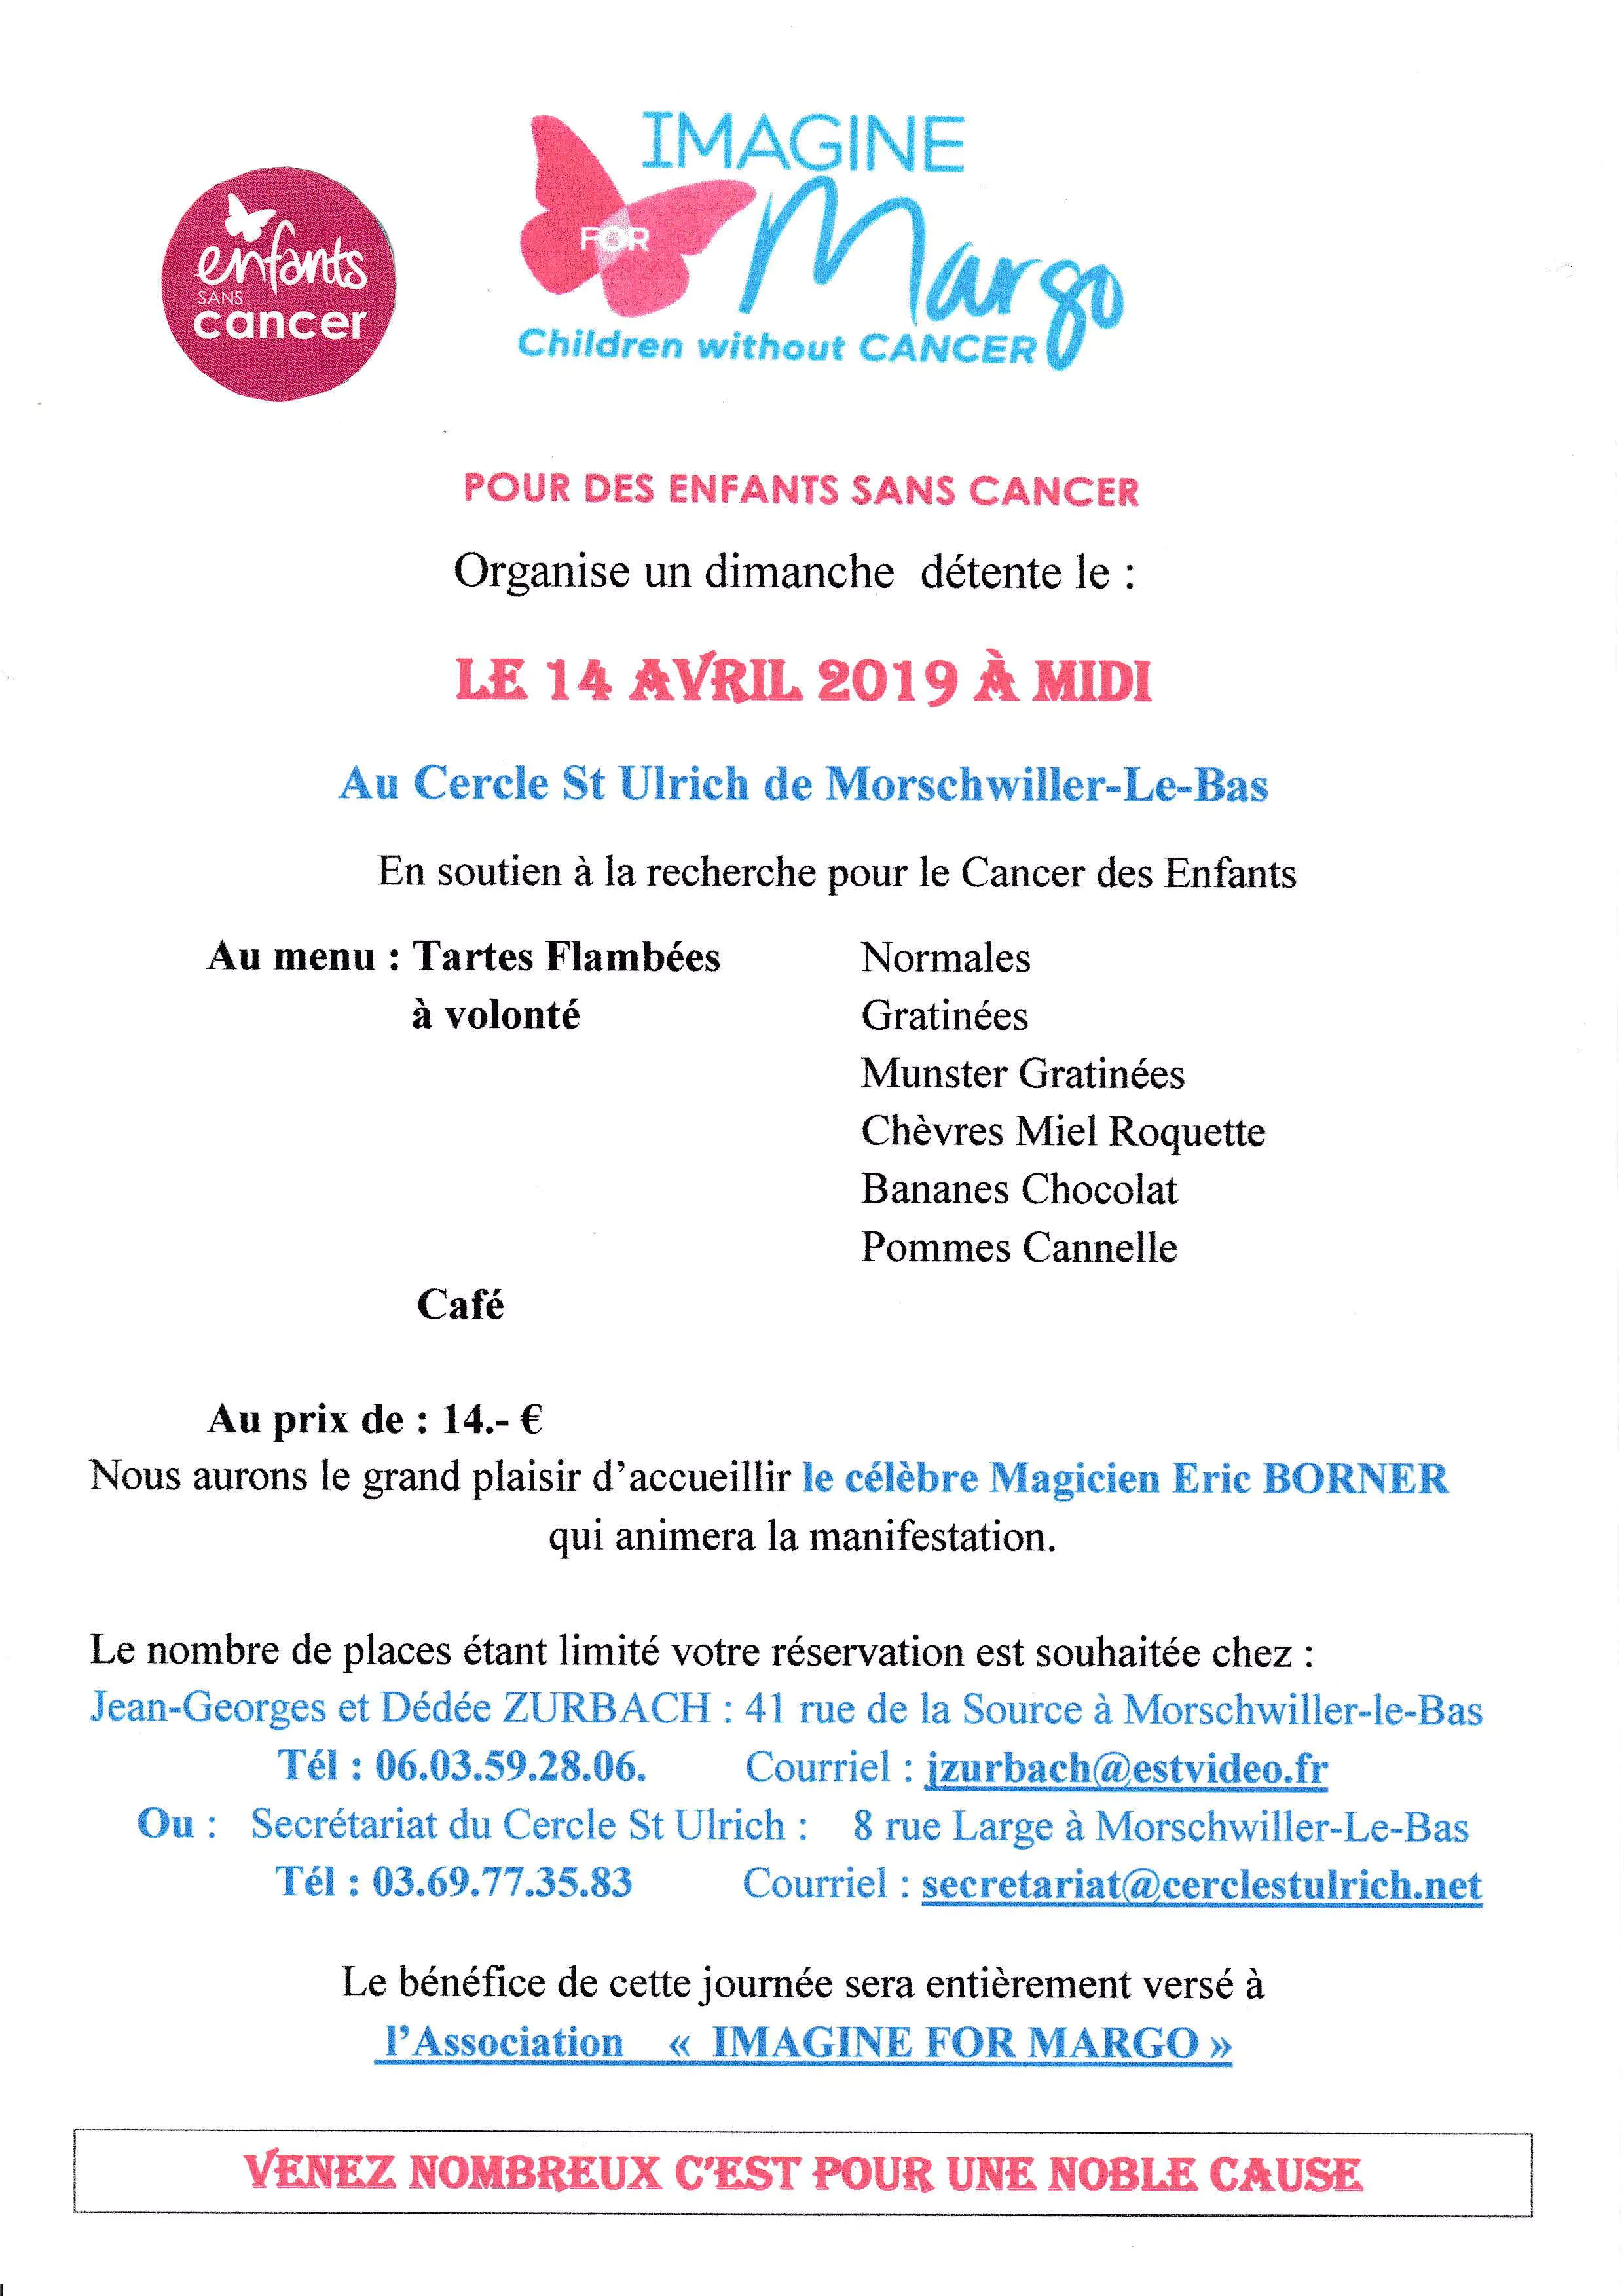 évènement organisé pour lutter contre le cancer des enfants